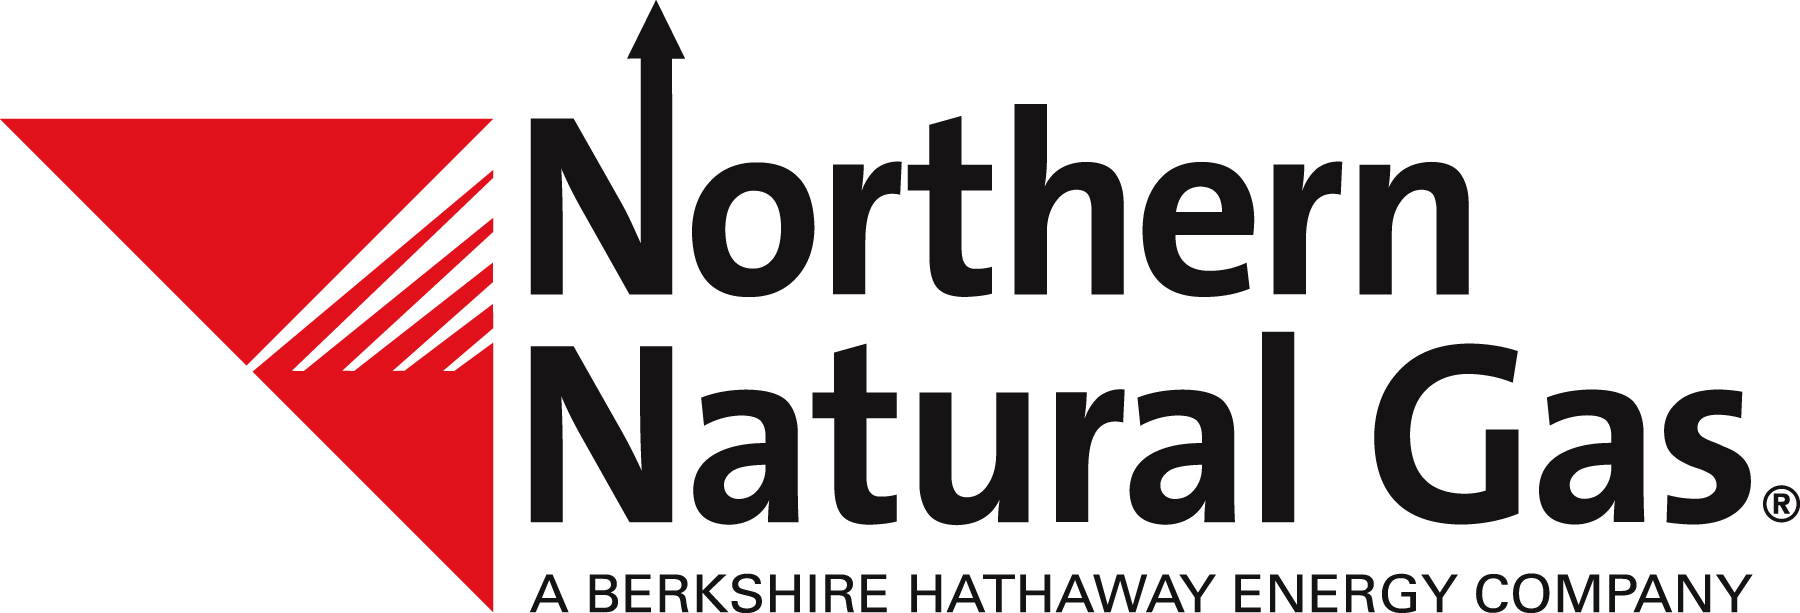 Gas natural del norte (púrpura)